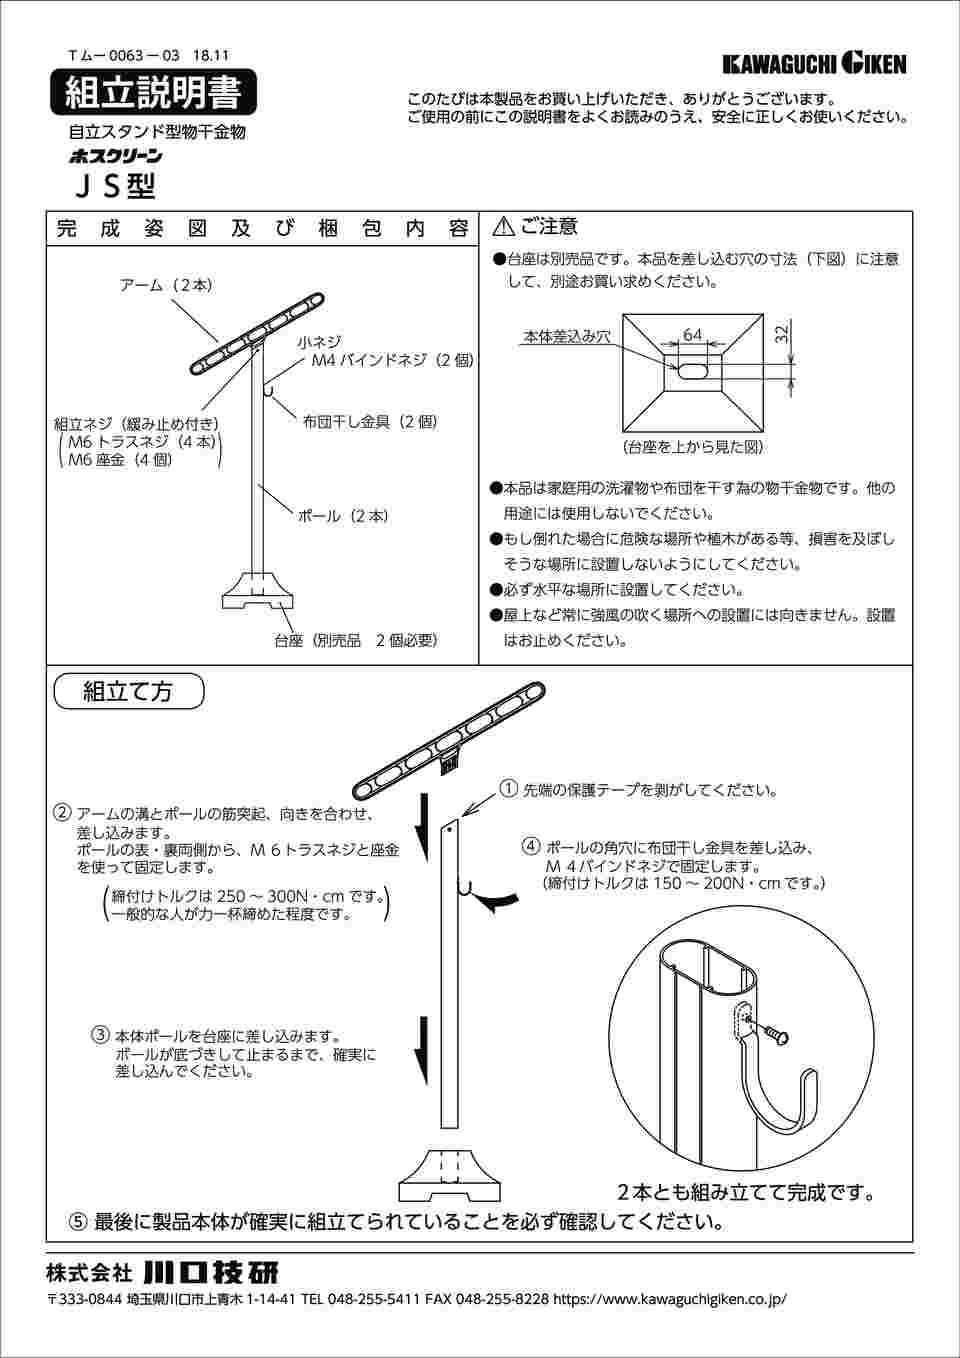 65-2493-77 ホスクリーン 自立型物干金物 JS型 2本入 JS-85-SST 【AXEL